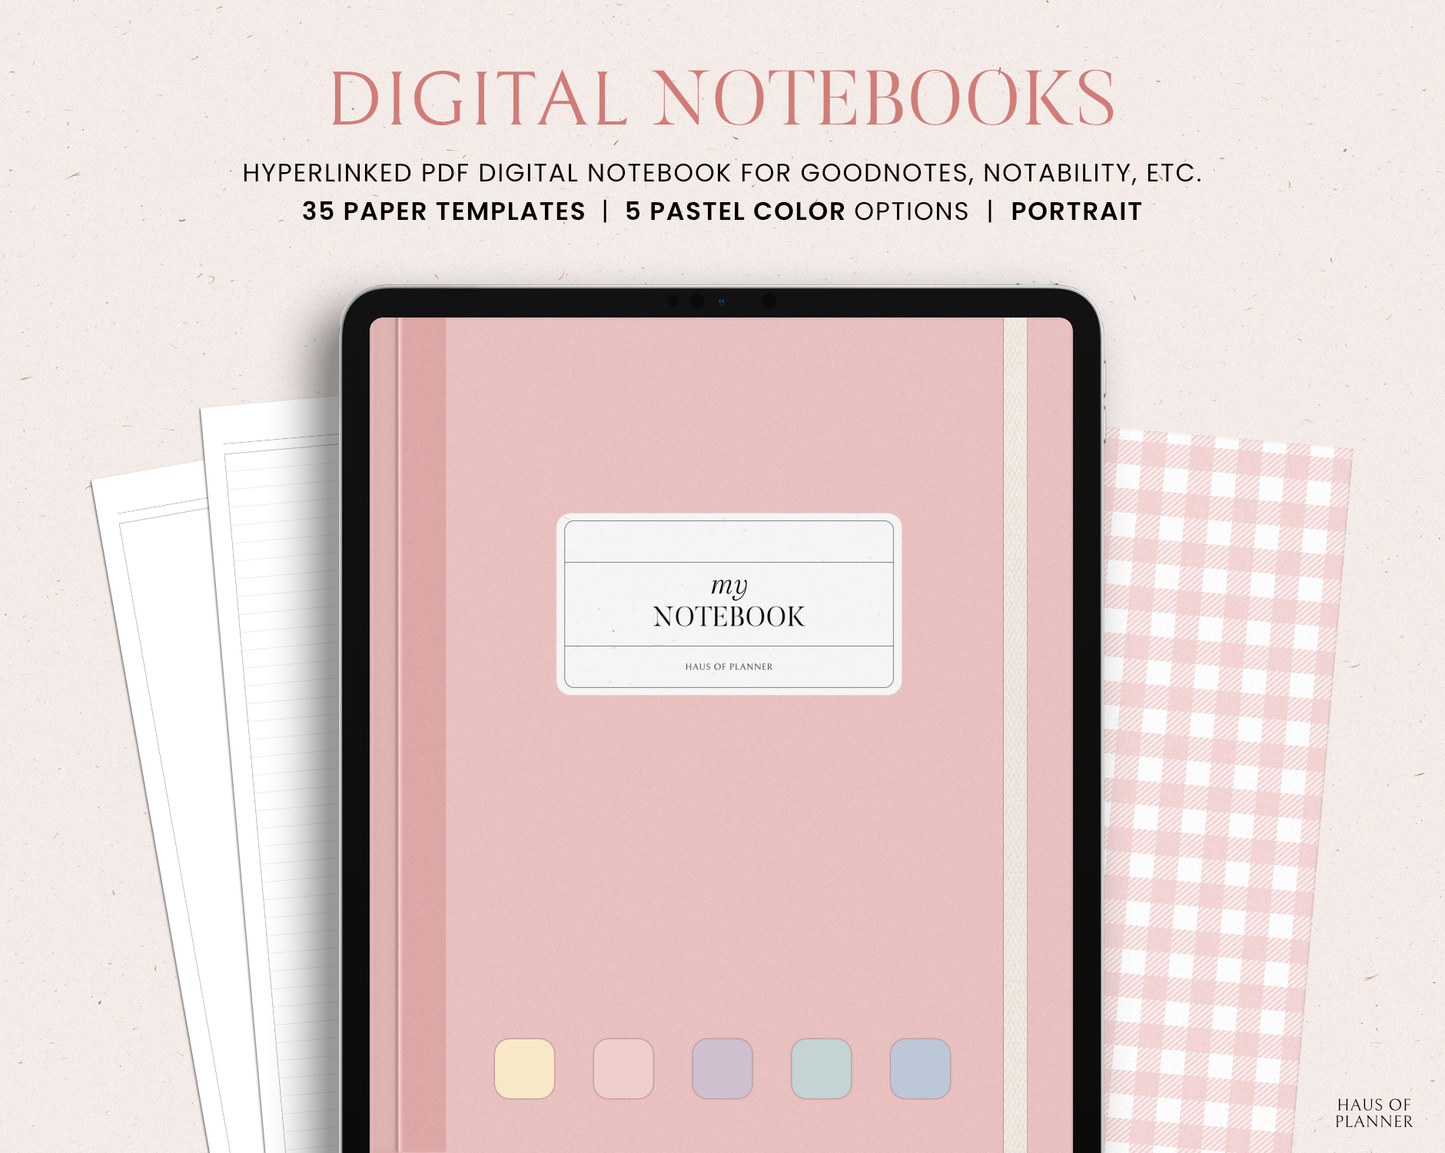 12 Subject Digital Notebooks | Portrait | 5 Pastel Colors